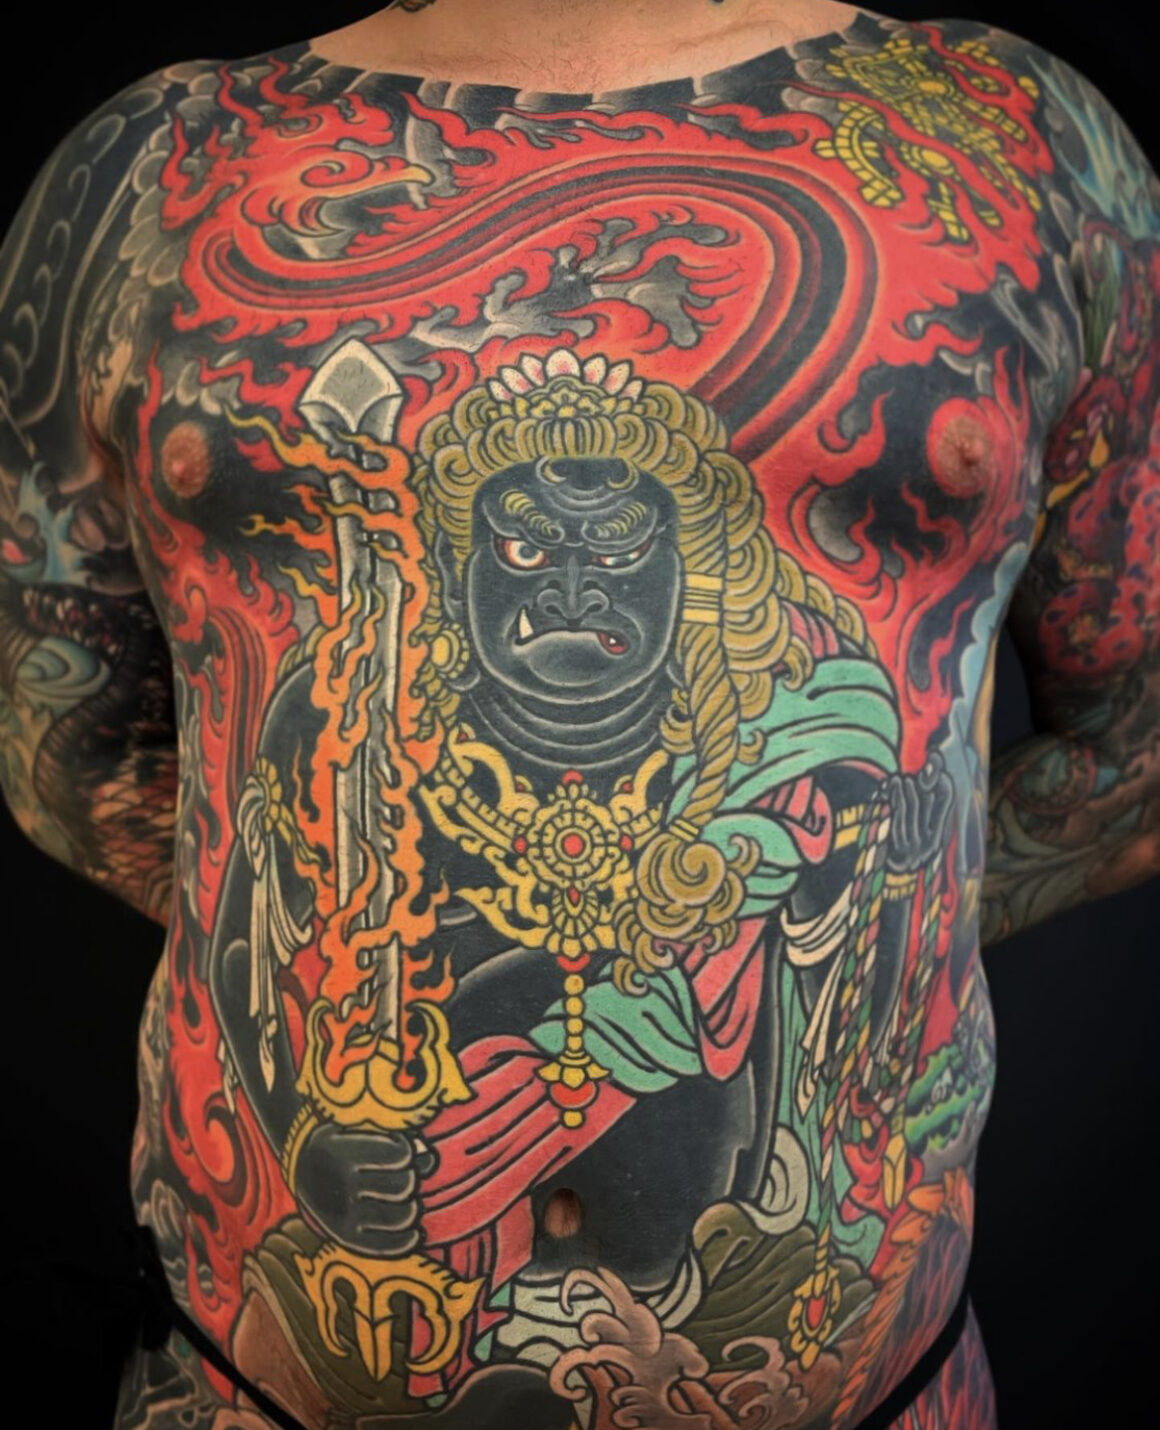 BUddha Back Piece Tattoo by DeMoniqueTattoo on DeviantArt